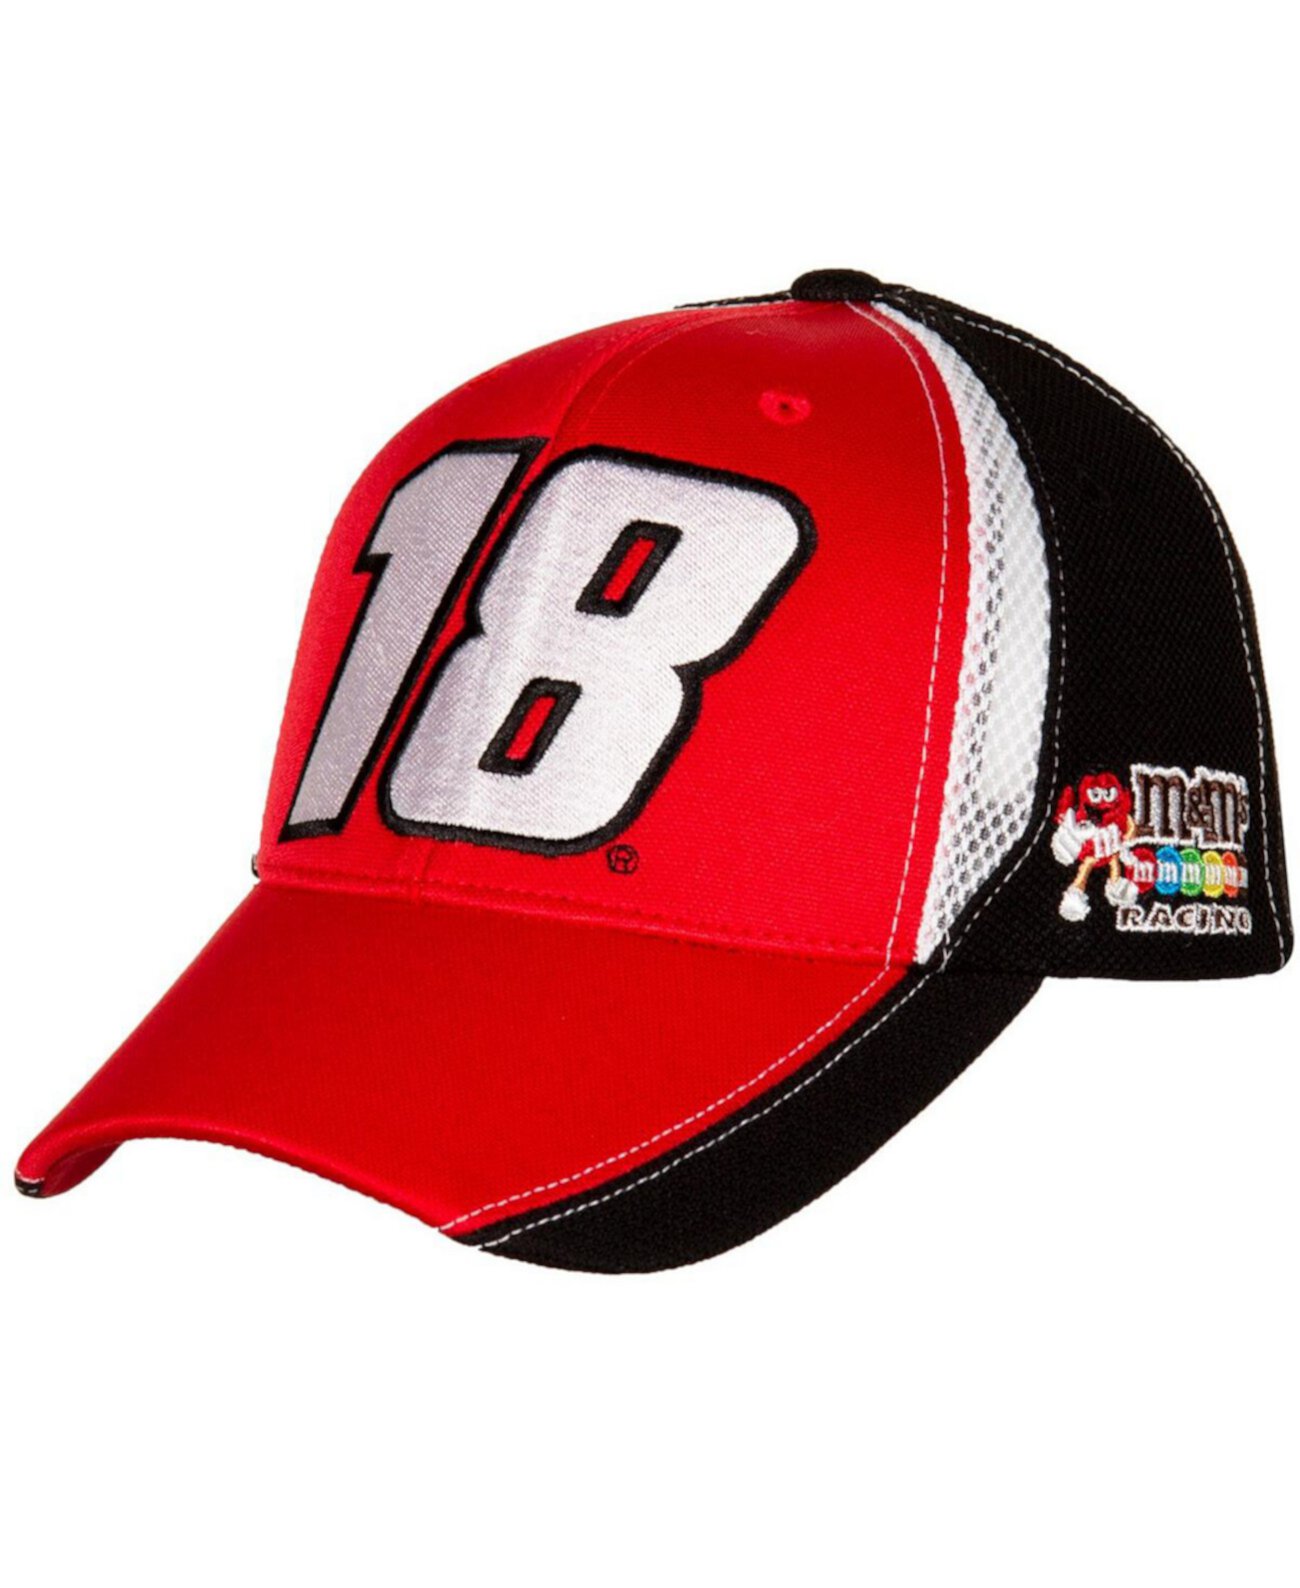 Мужская красно-черная регулируемая кепка Kyle Busch M&Ms Number Performance Joe Gibbs Racing Team Collection